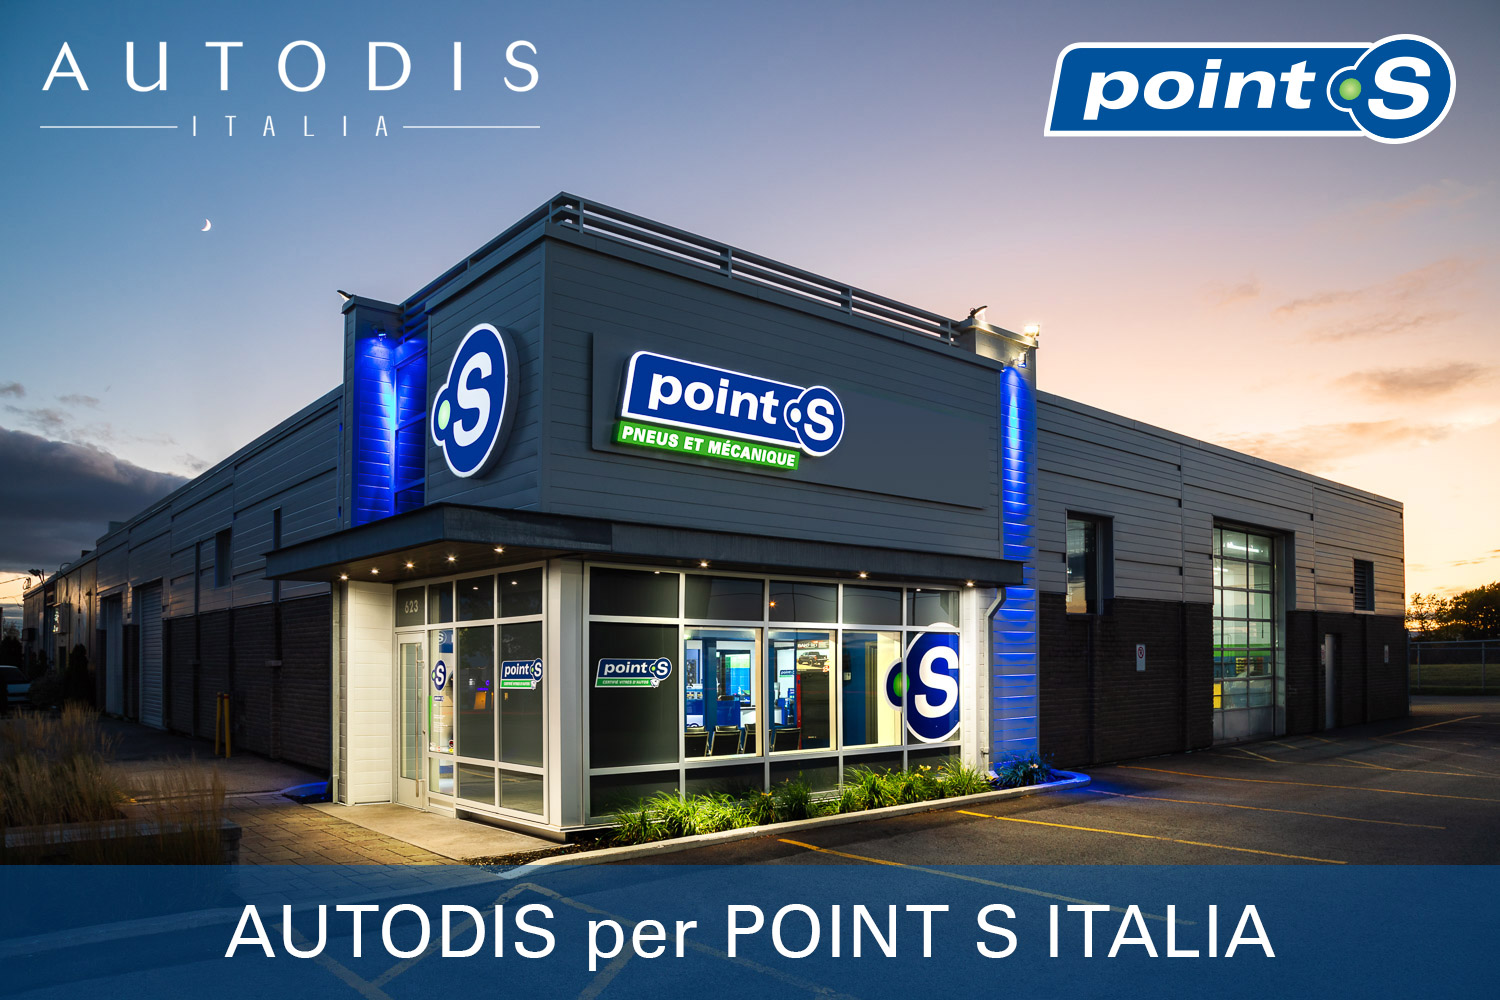 Distribuzione ricambi: prende vita la collaborazione tra POINT S e Autodis Italia